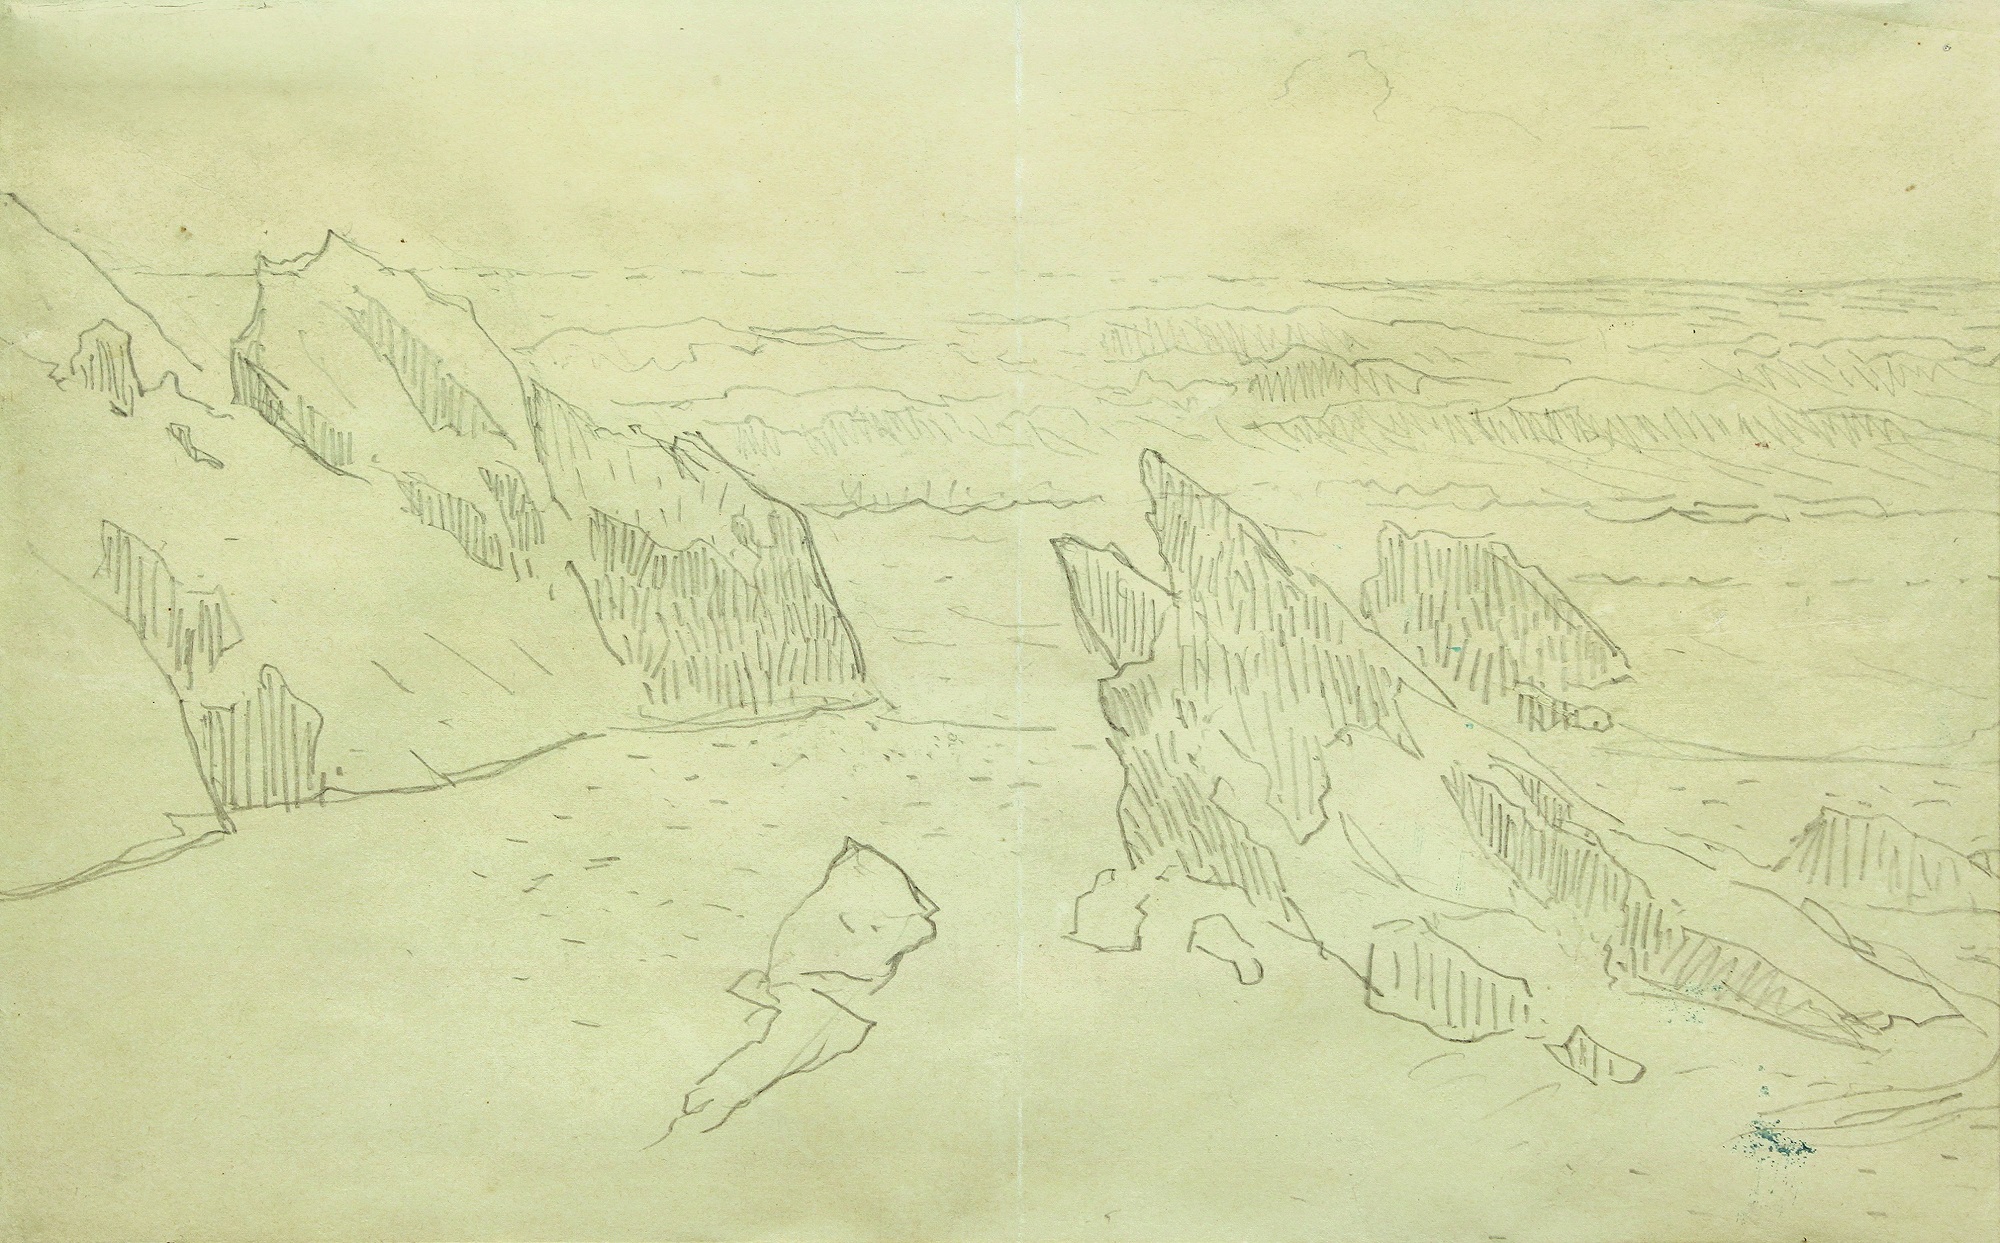 Paul Gauguin (1848-1903), Étude de rochers, vers 1888-1890. Crayon sur papier, 26 x 38 cm. Pont-Aven, musée de Pont-Aven, legs d’Yves Marmin. Photo service de presse. © Photo Laurent Bruneau - Procolor-29qle